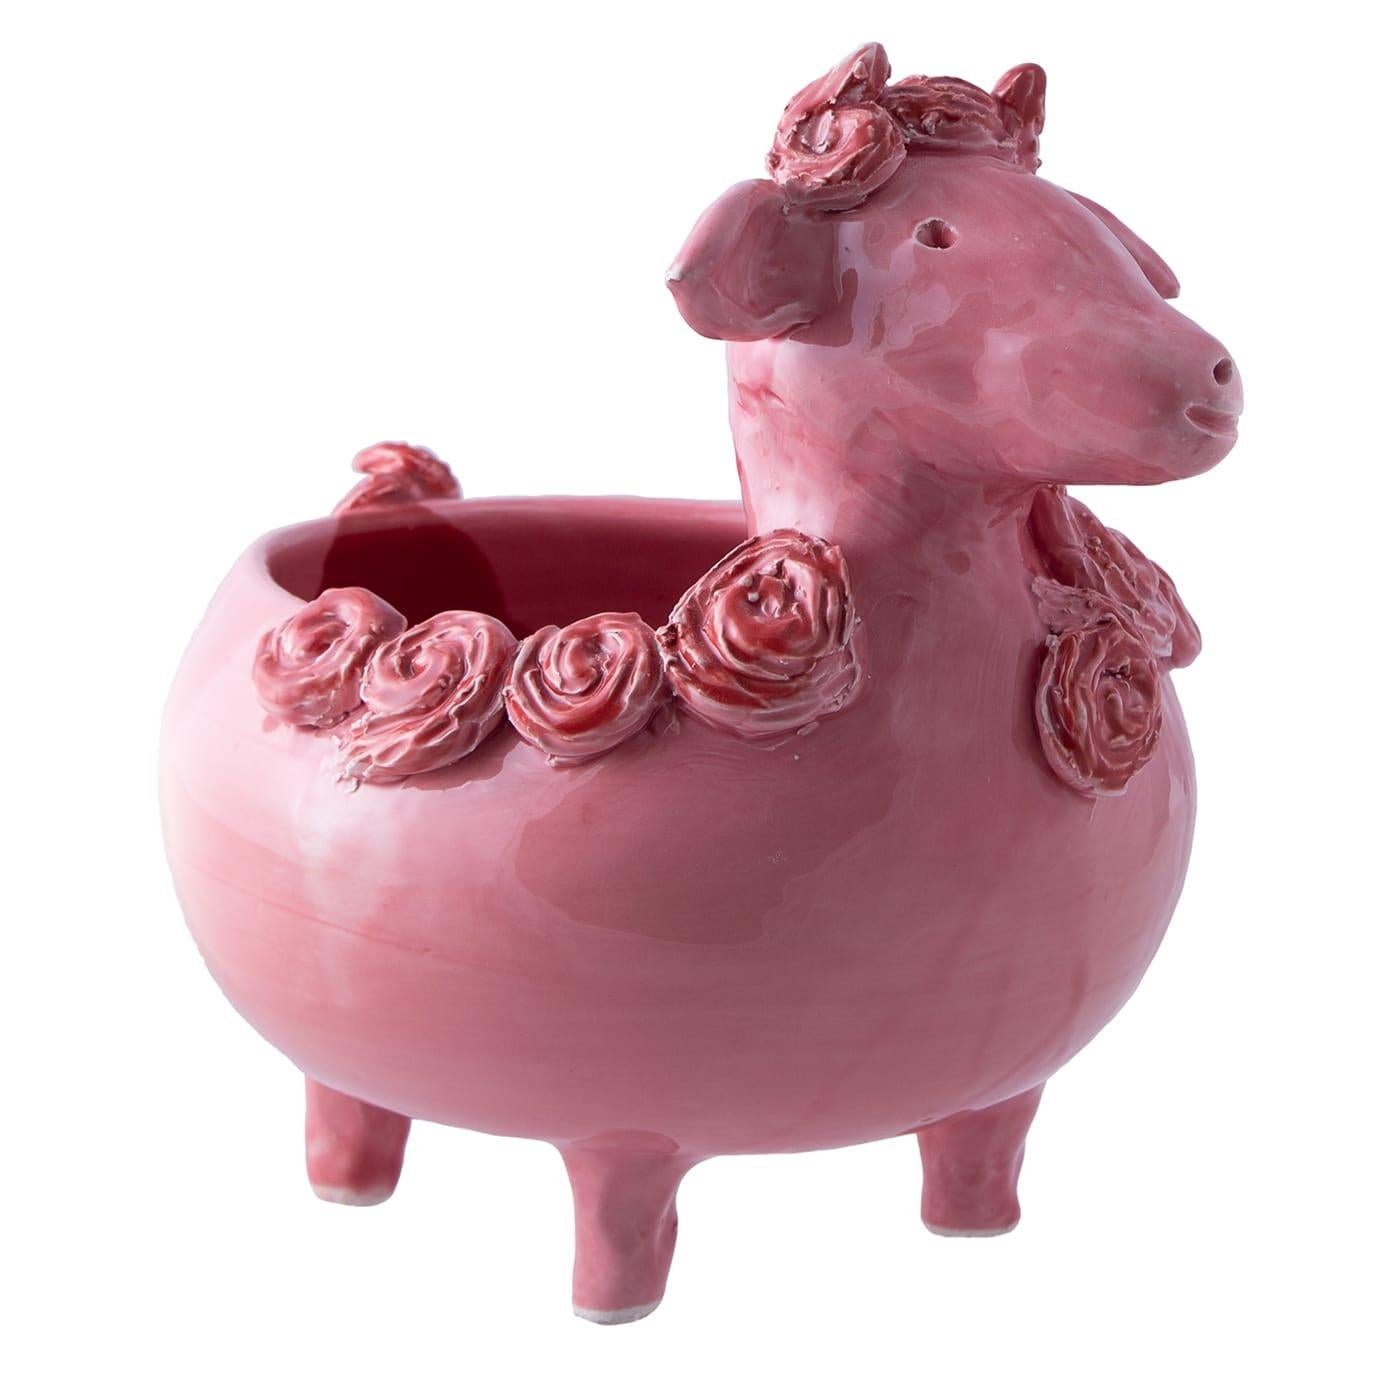 Ceramic The Pink Sheep Vase Holder For Sale